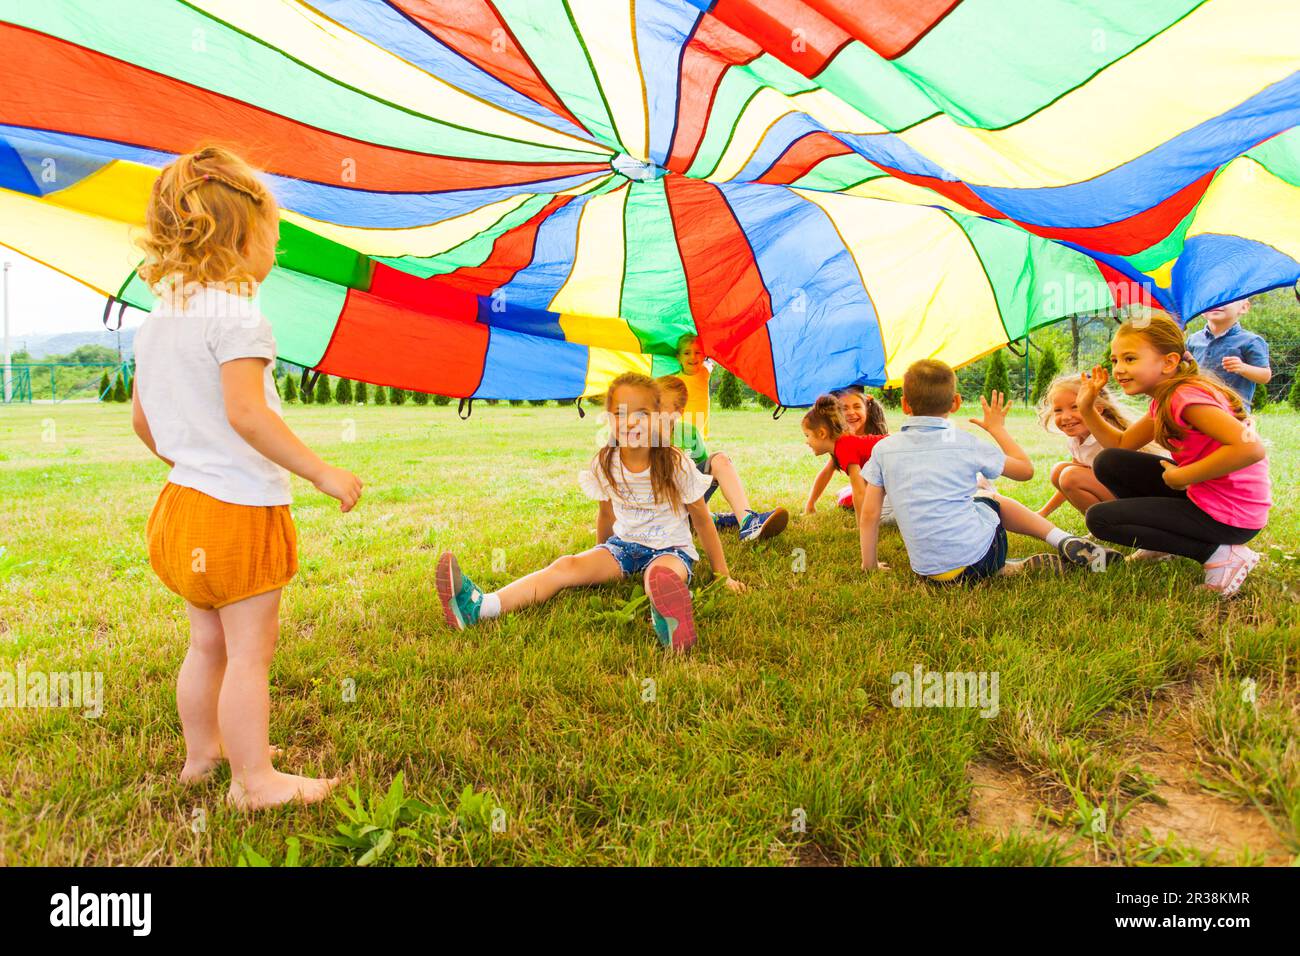 Jeux amusants sous verrière colorée à l'été en plein air Banque D'Images